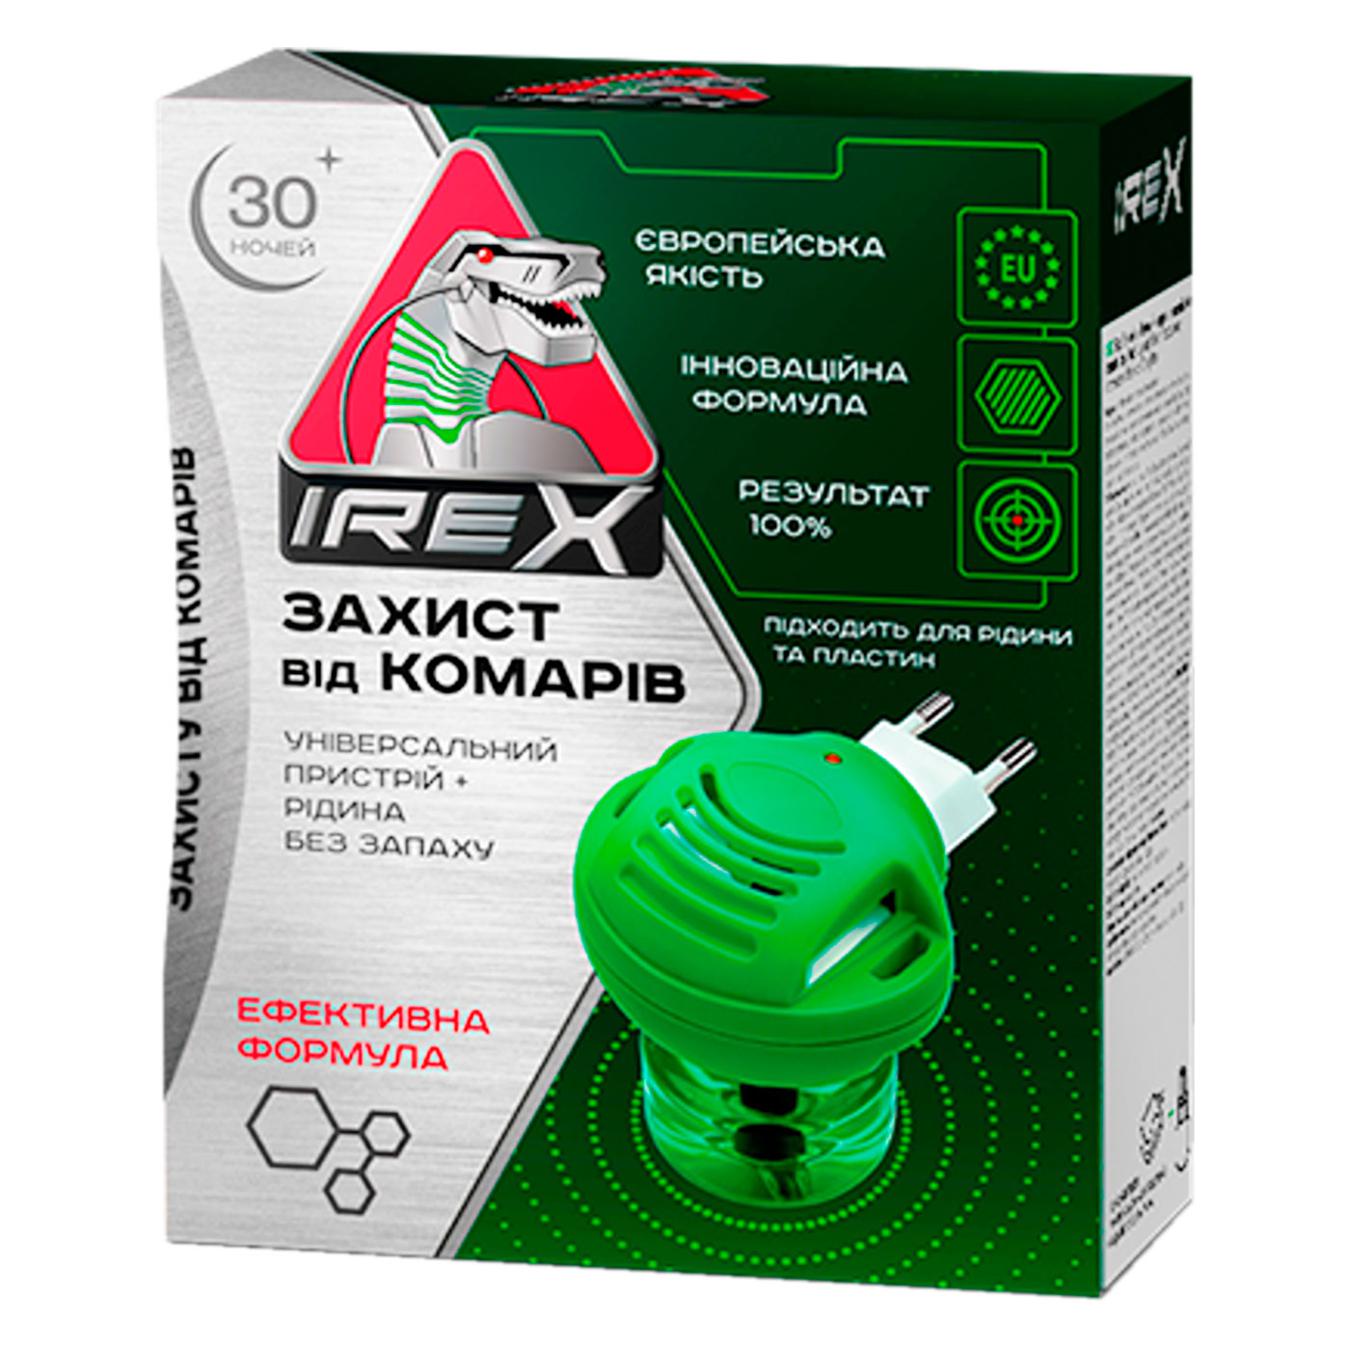 Irex electrofumigator and mosquito liquid set 30 nights